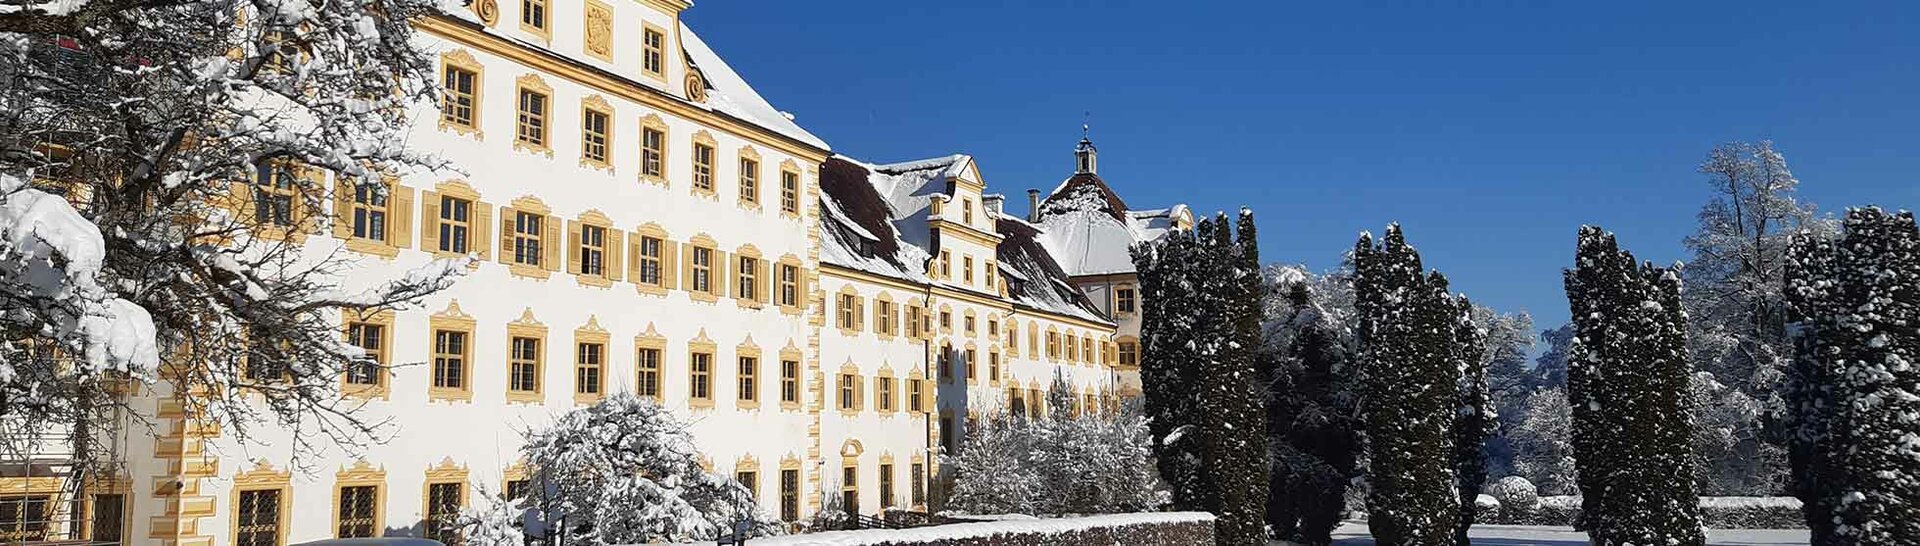 Schule Schloss Salem im Schnee